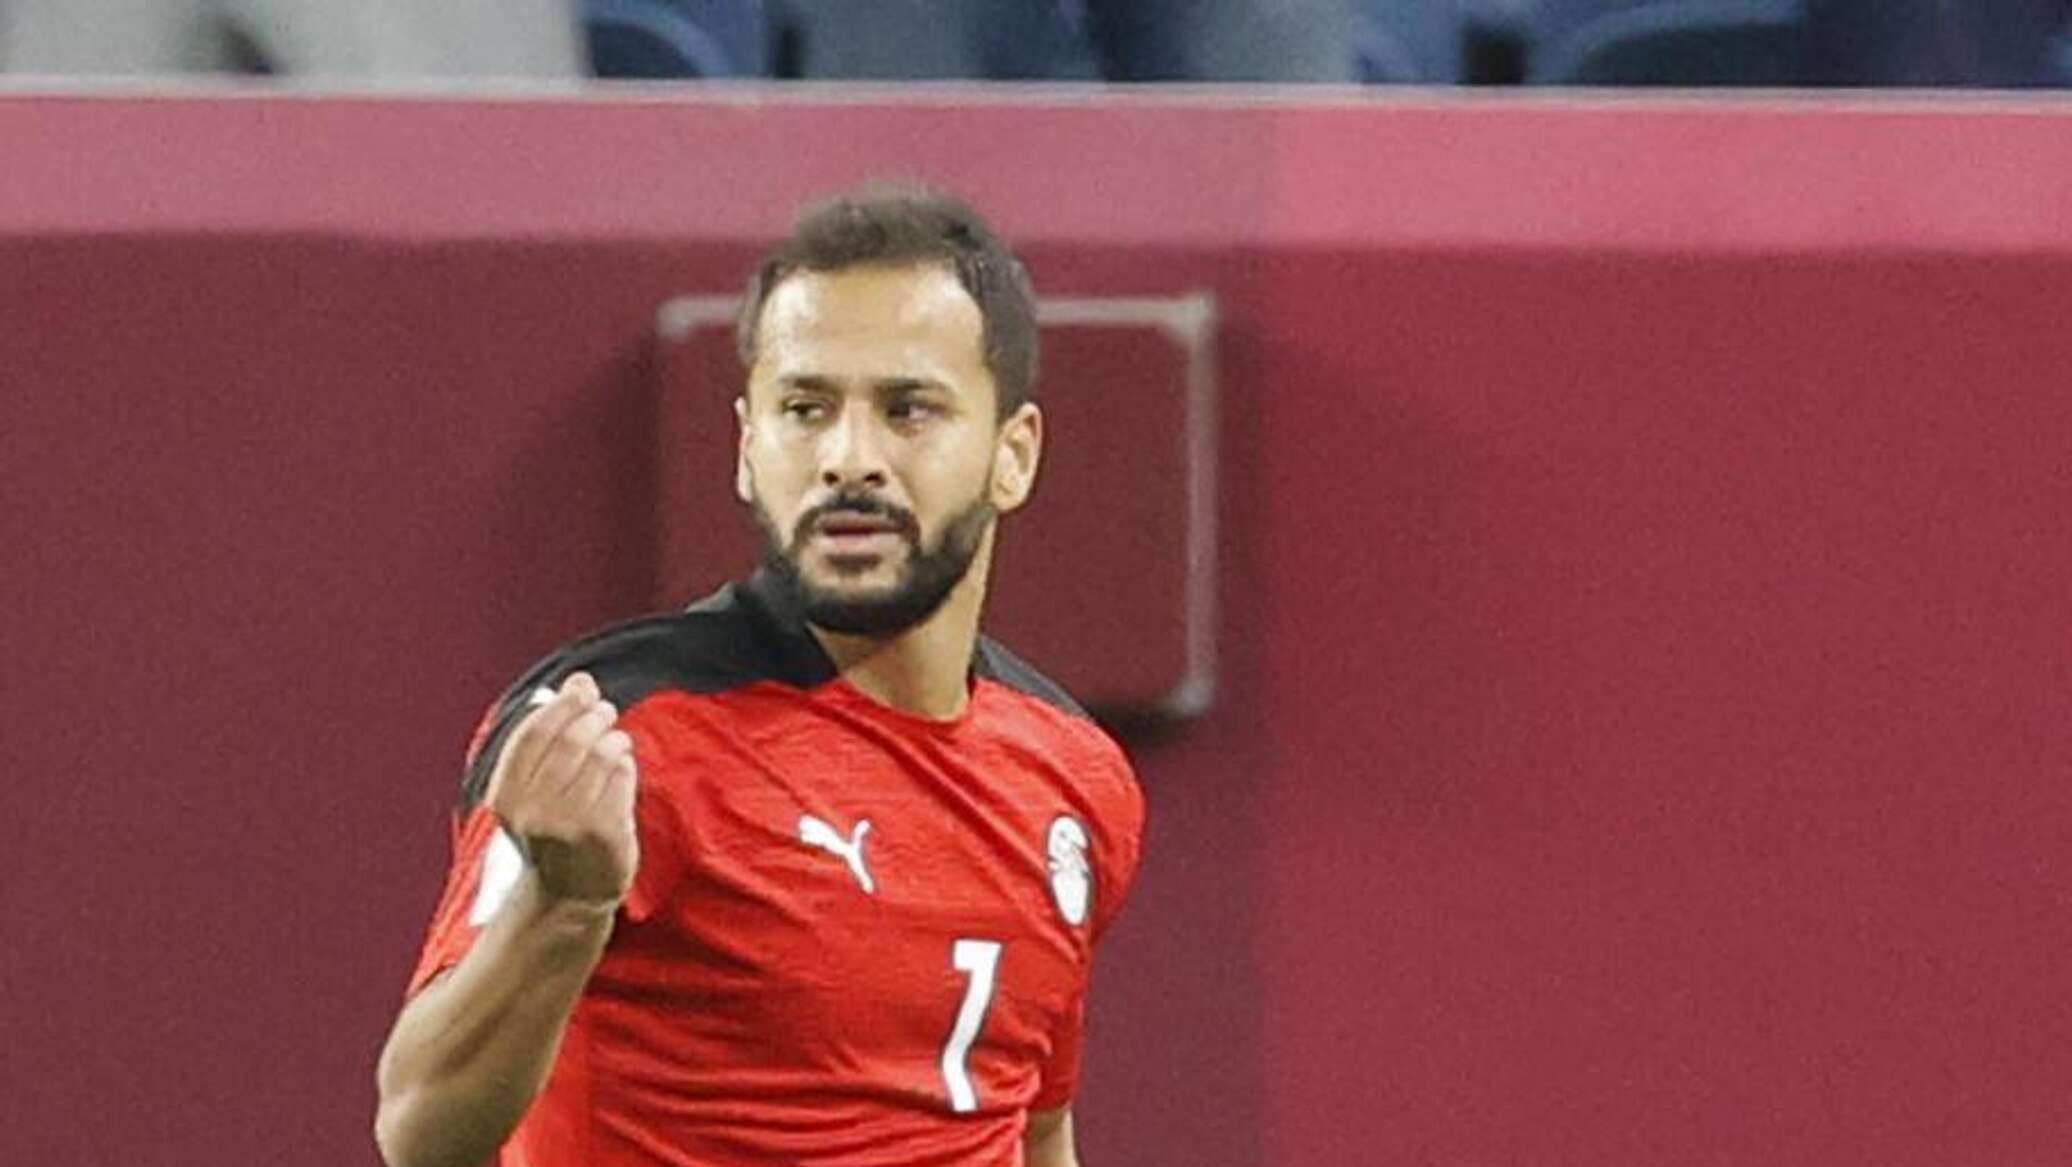 توقف قلبه ساعة وعاد للحياة... فيديو يوضح تفاصيل سقوط اللاعب المصري أحمد رفعت داخل الملعب